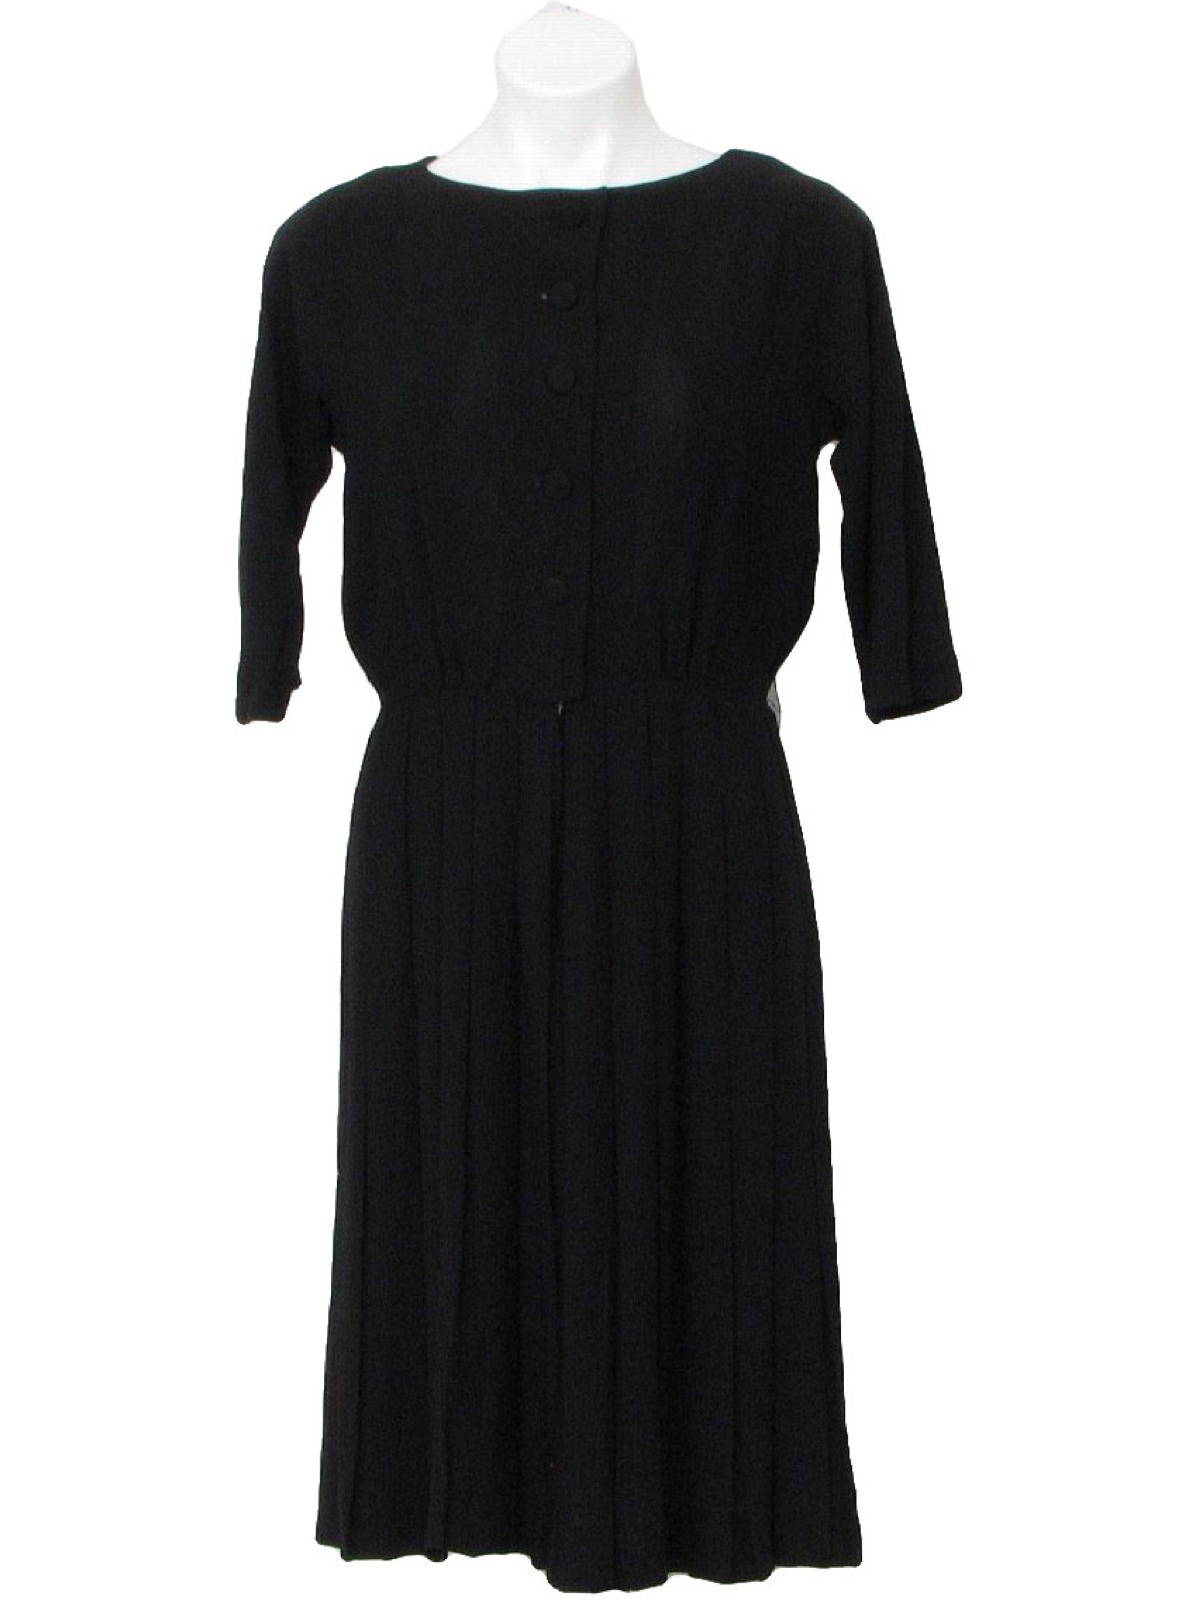 Retro 1950's Dress (Betty Hartford) : Late 50s early 60s -Betty ...